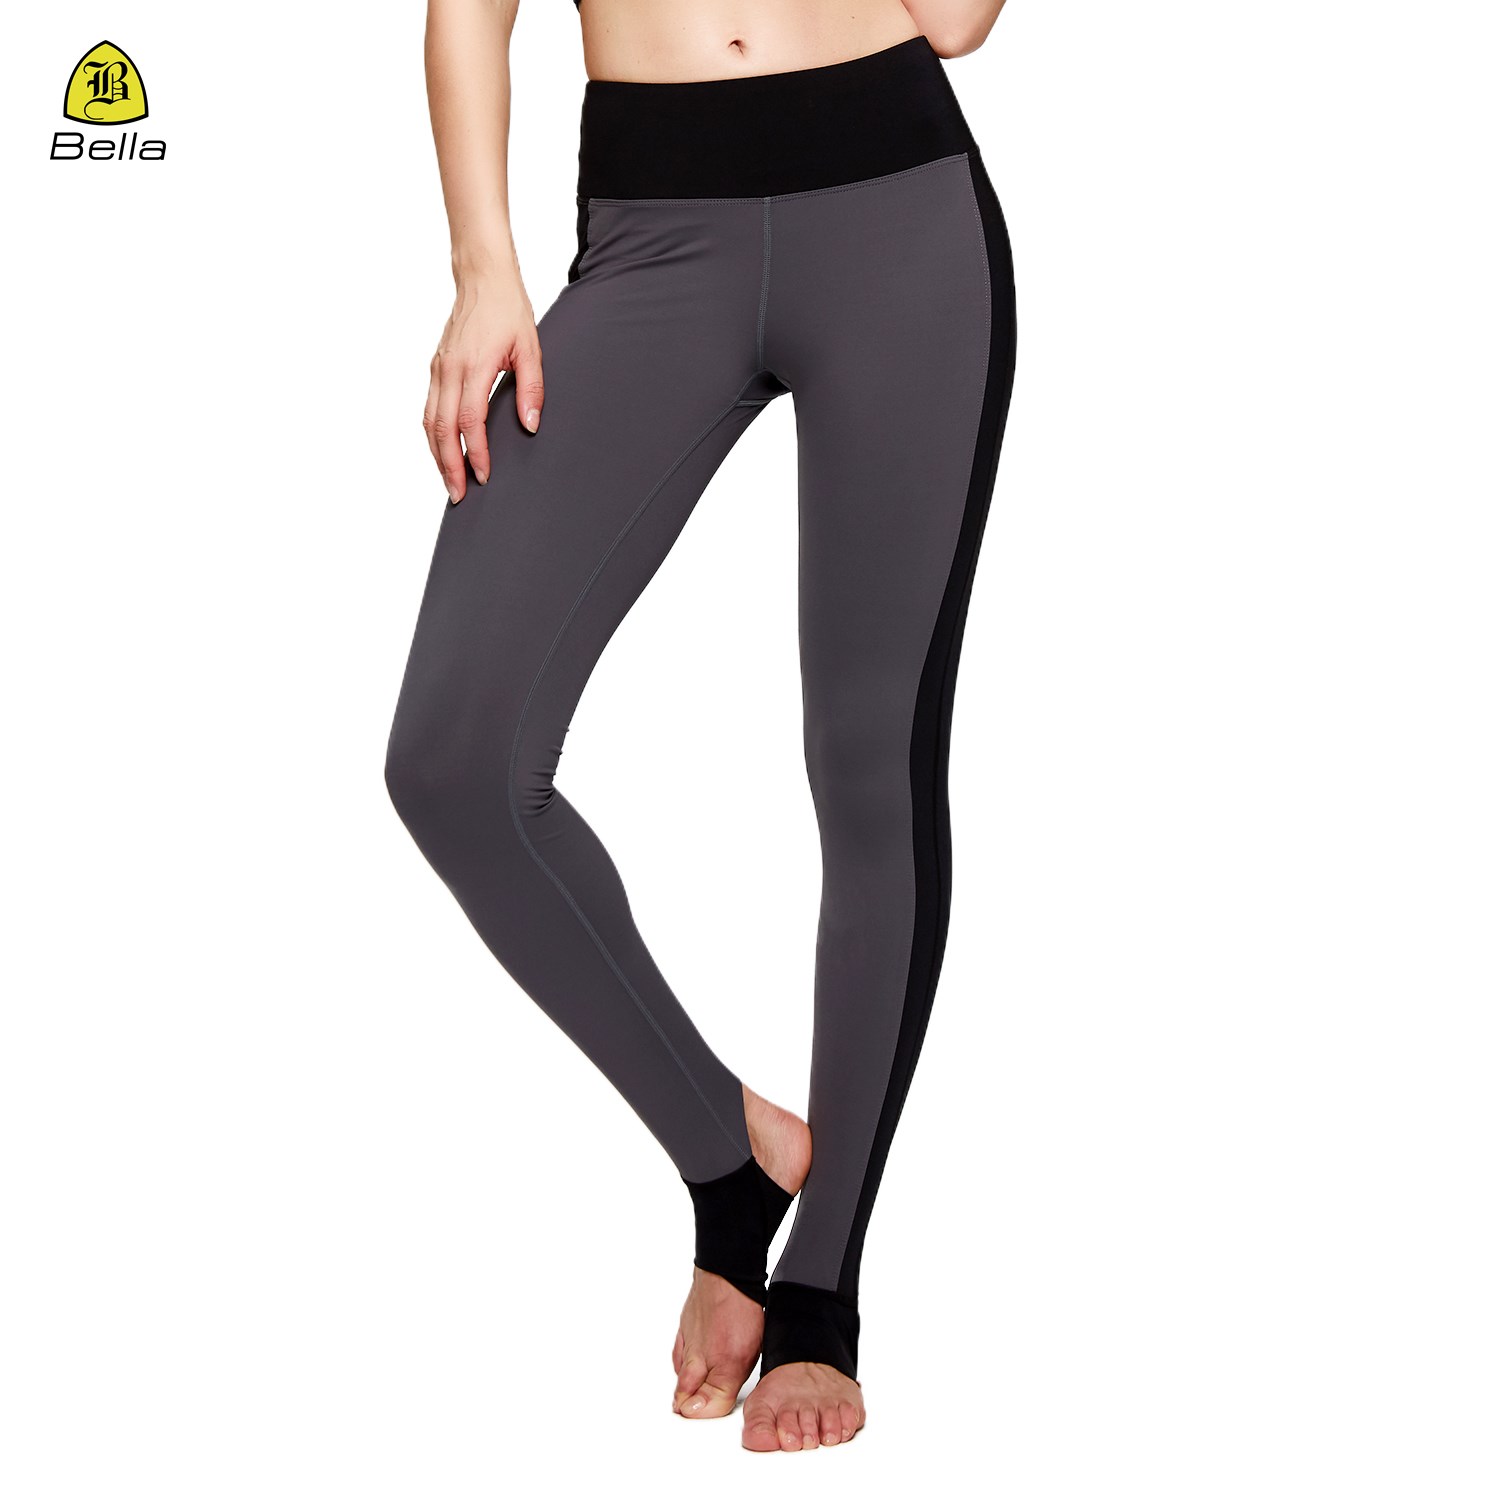 Pantalones de yoga cómodos y de compresión suave con diseño sobre el talón y bolsillo oculto